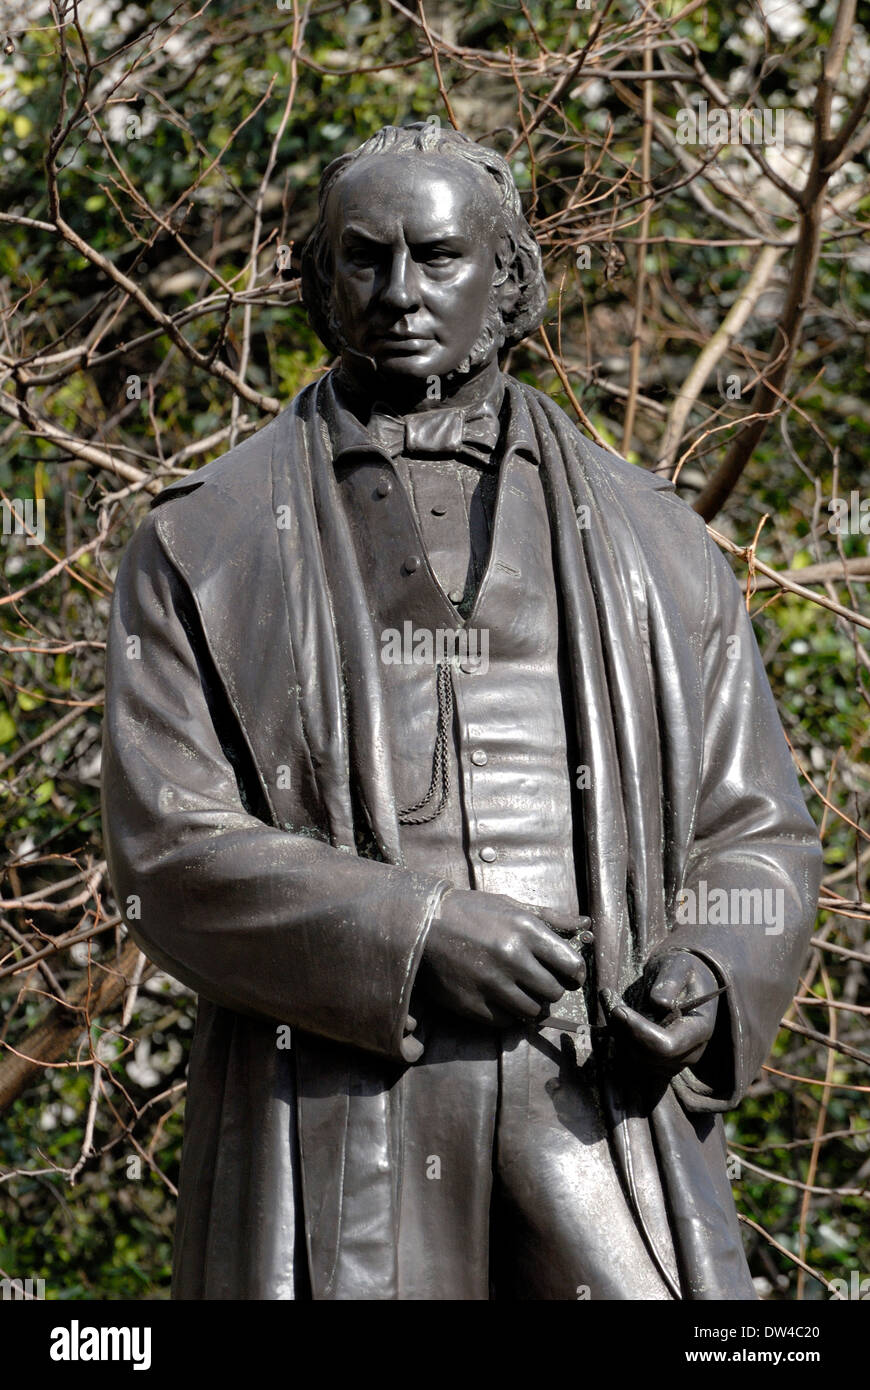 Londres, Angleterre, Royaume-Uni. Statue (1877, par le Baron Marochetti) d'Isambard Kingdom Brunel (1806-1859) : ingénieur en Temple Place Banque D'Images